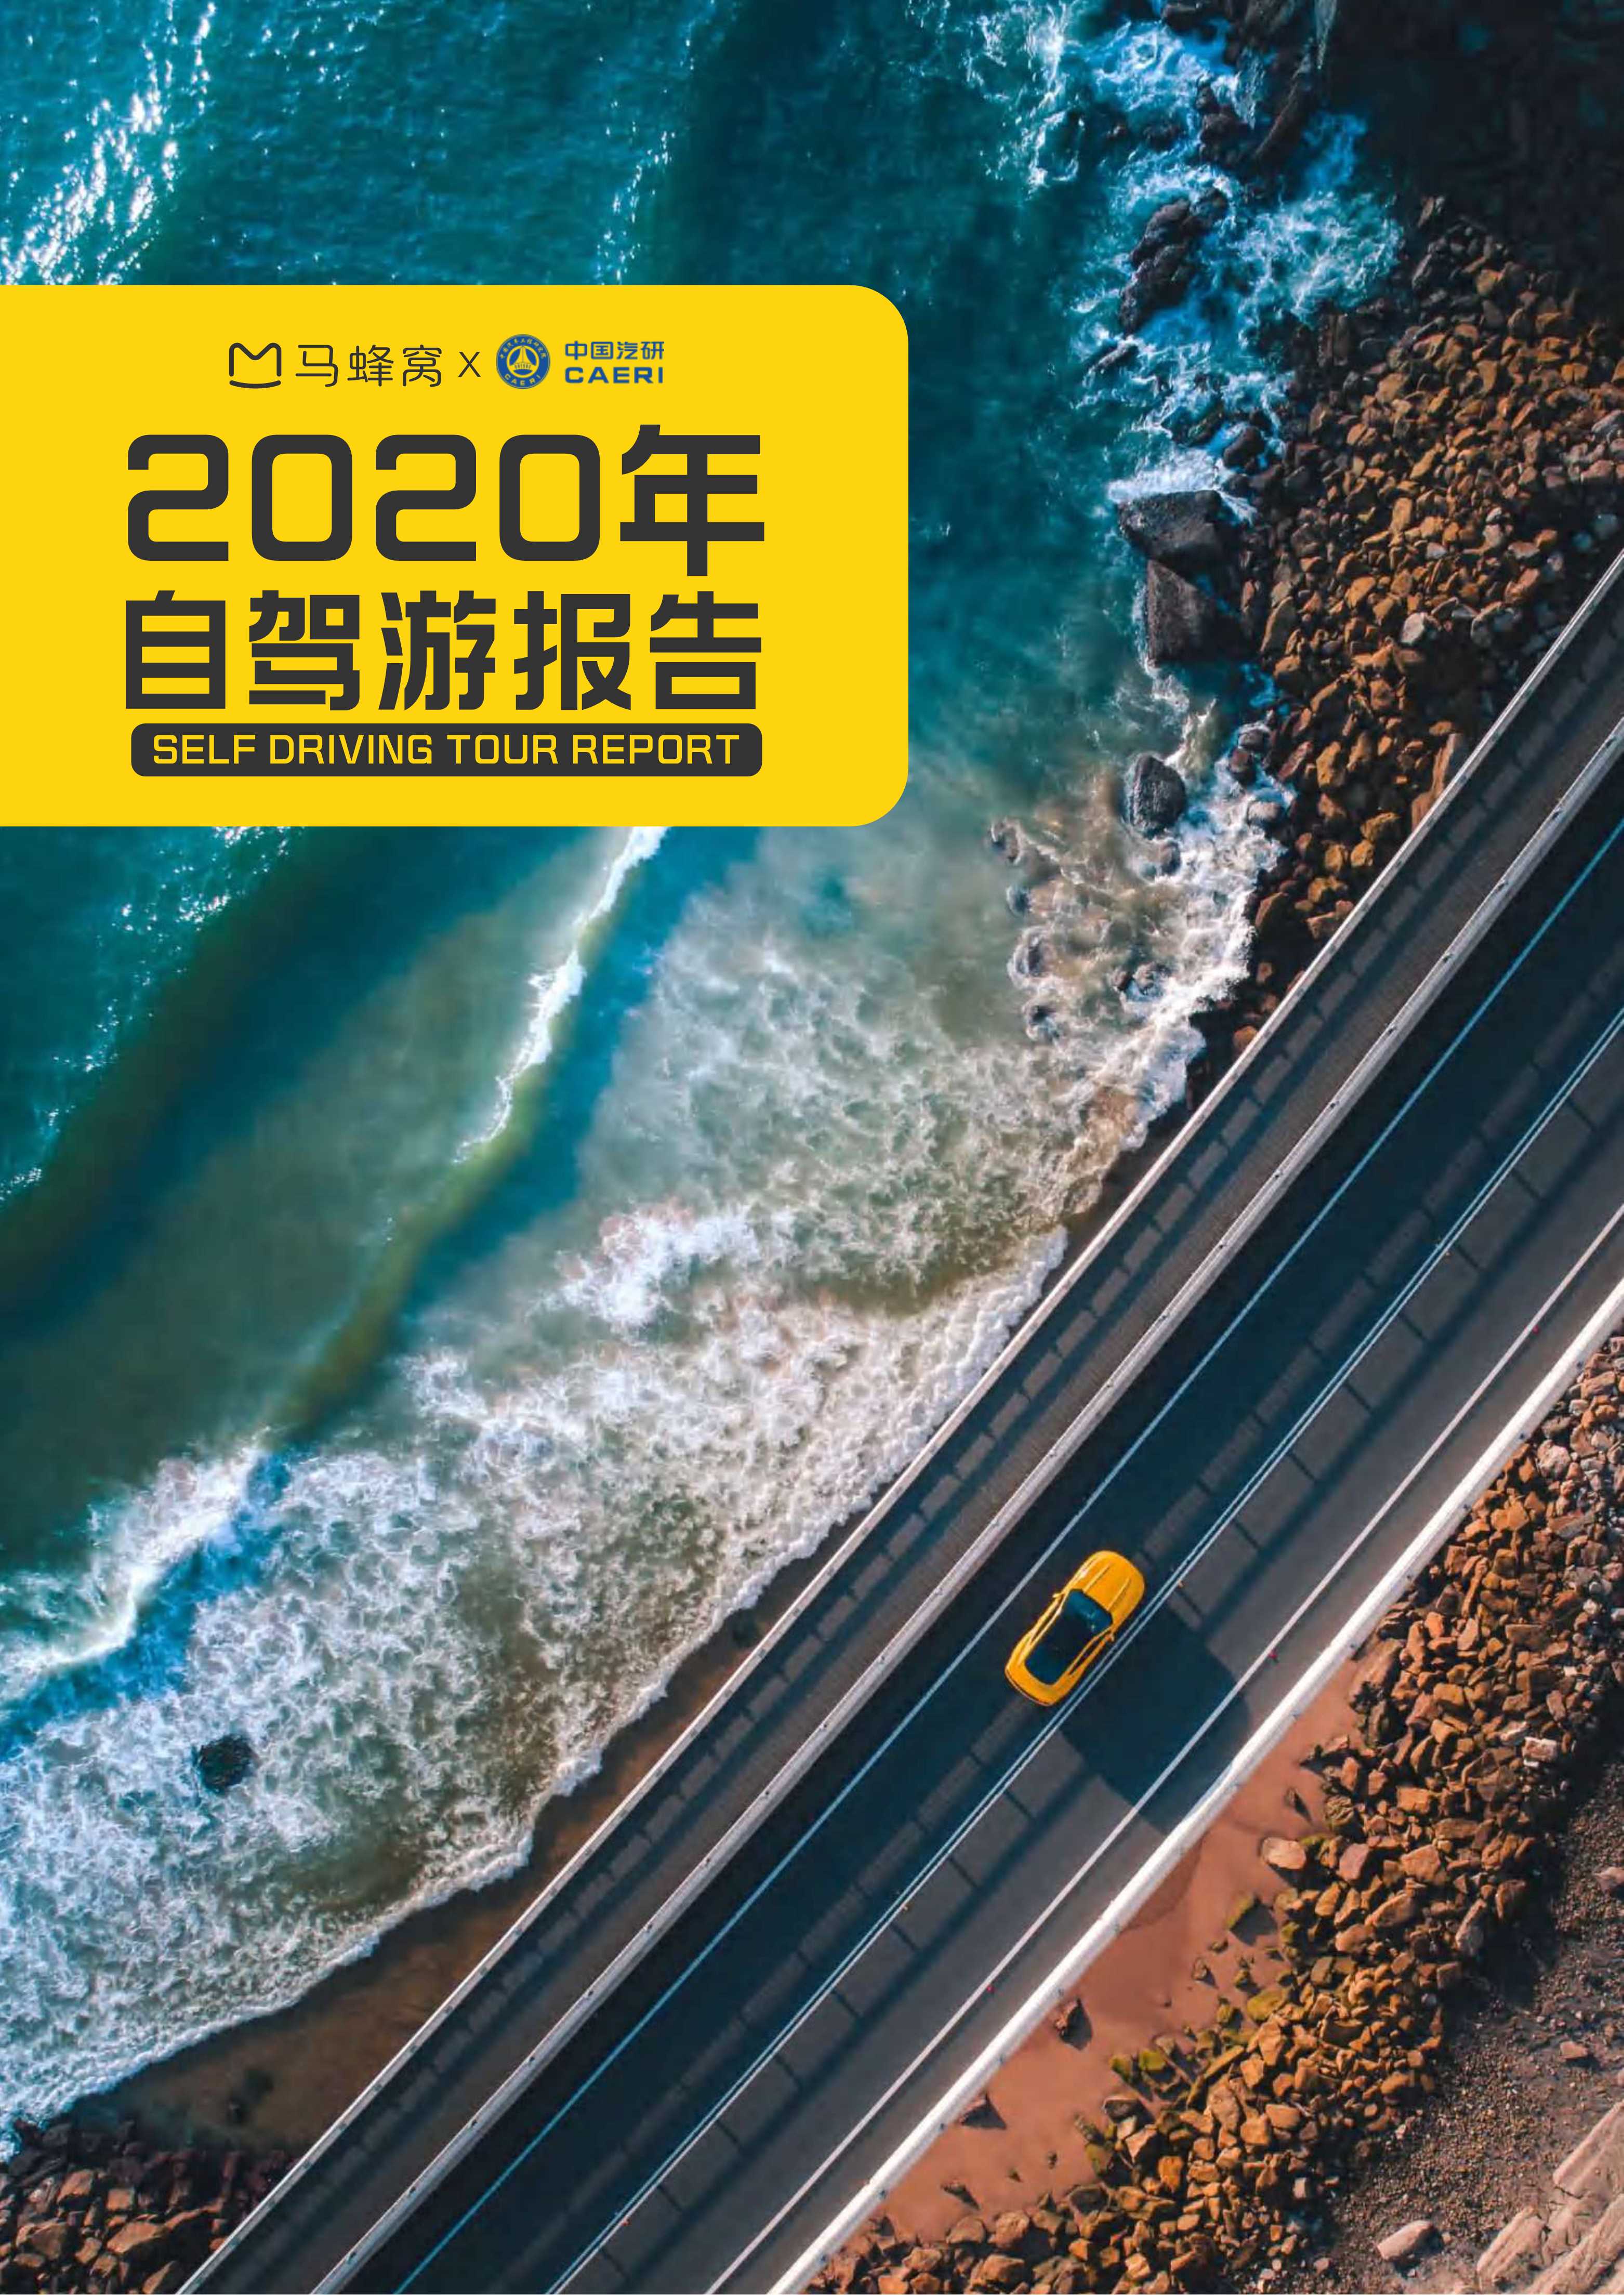 马蜂窝旅游&中国汽研-2020年自驾游报告-2021.06-23页